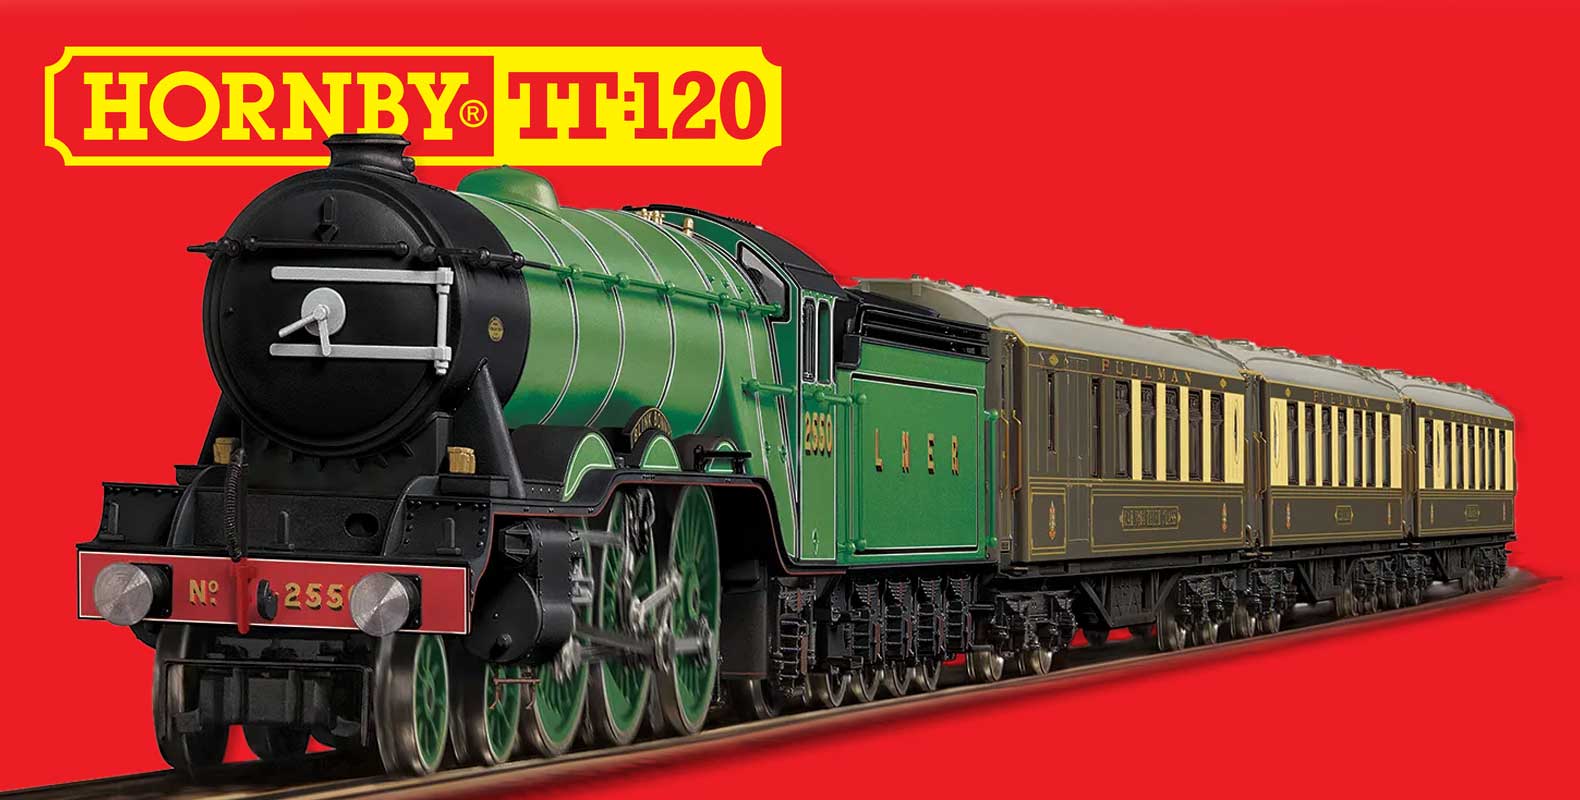 Hornby TT:120 Locomotive Range